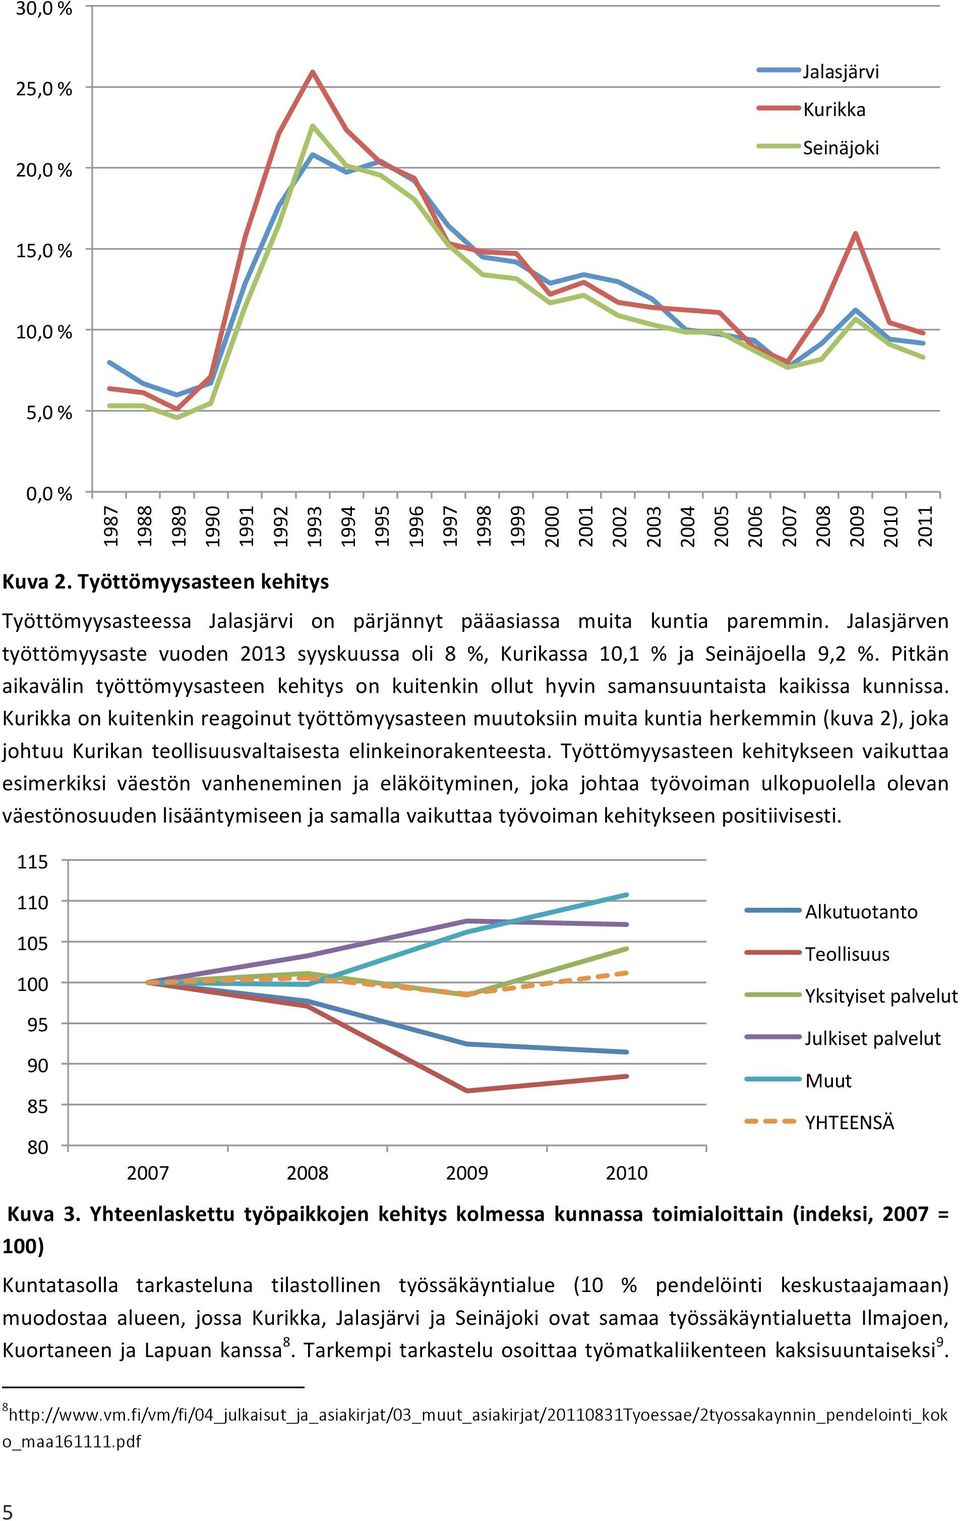 Jalasjärven työttömyysaste vuoden 2013 syyskuussa oli 8 %, Kurikassa 10,1 % ja Seinäjoella 9,2 %. Pitkän aikavälin työttömyysasteen kehitys on kuitenkin ollut hyvin samansuuntaista kaikissa kunnissa.